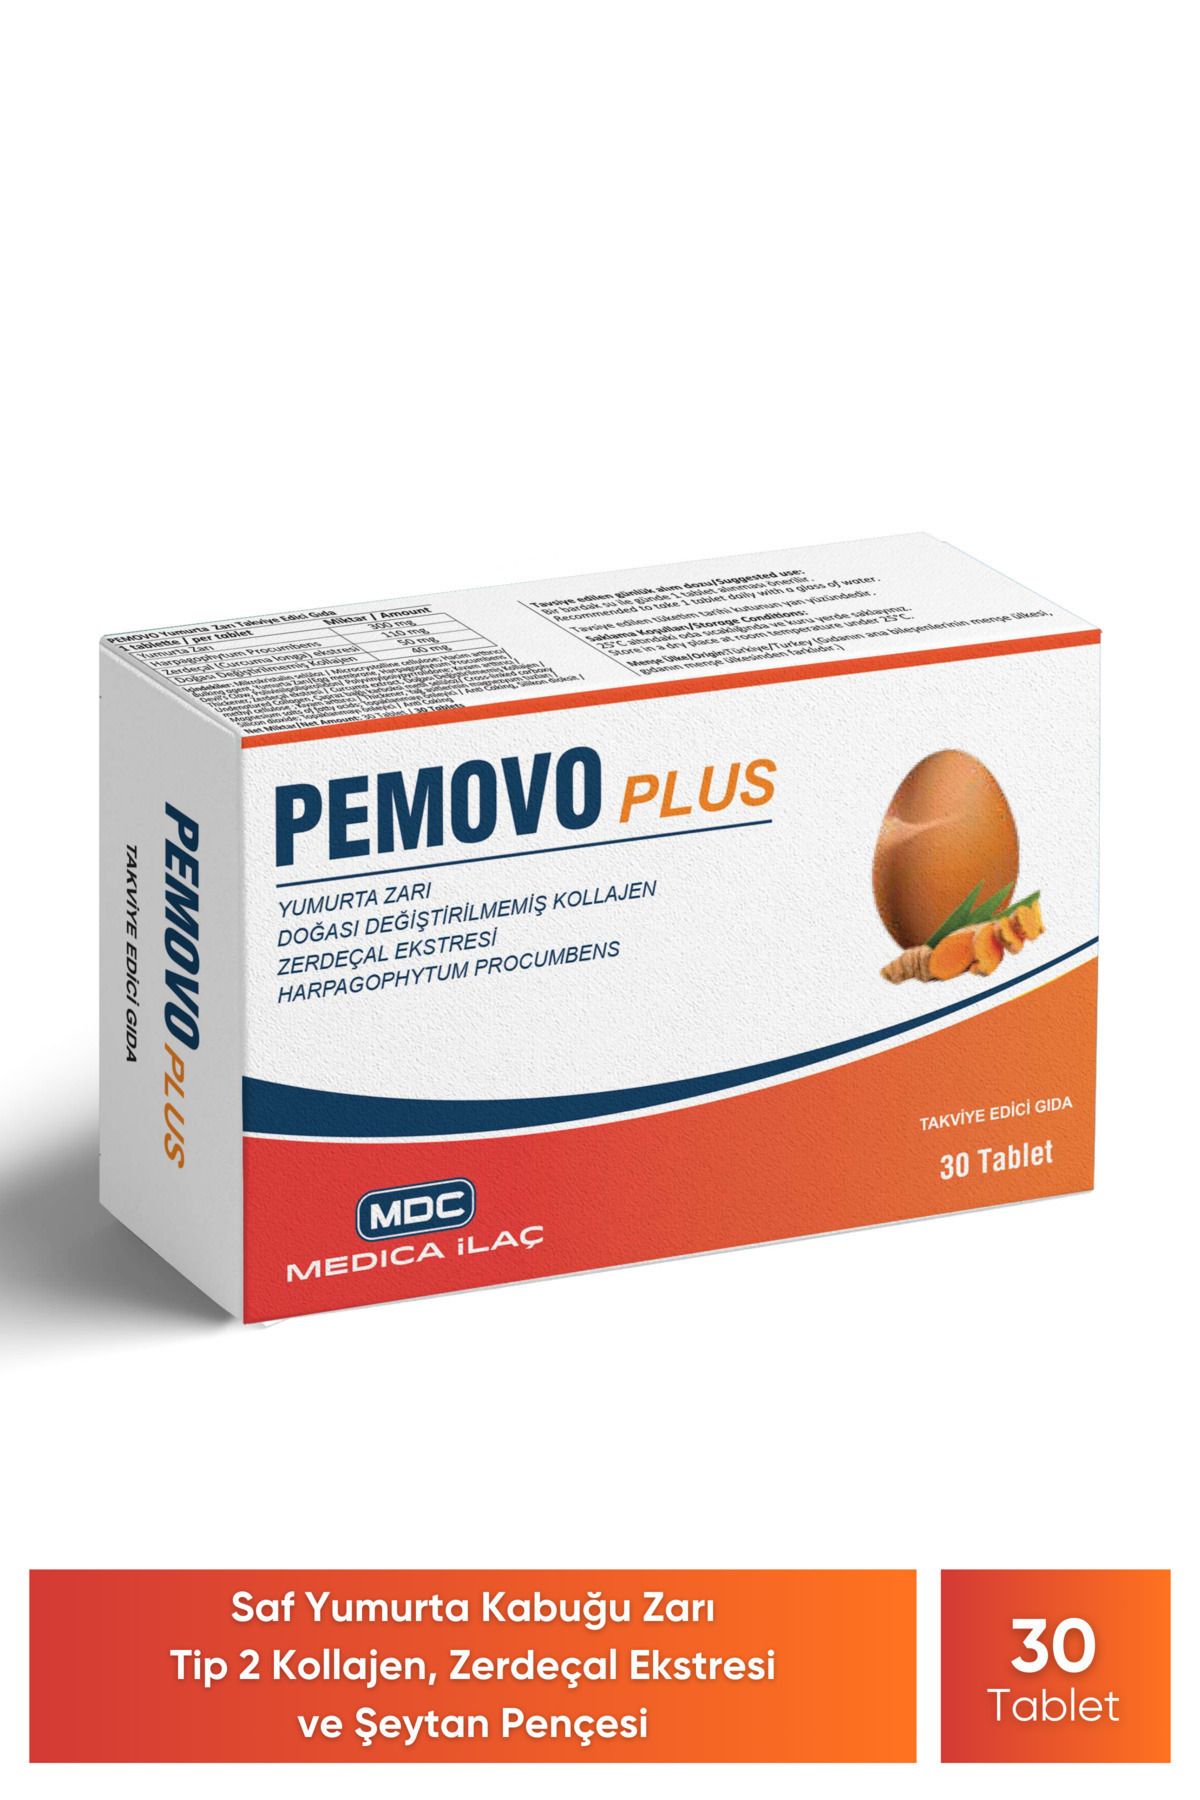 MDC Pemovo Plus 30 Tablet (SAF YUMURTA KABUĞU ZARI, TİP 2 KOLAJEN, ŞEYTAN PENÇESİ VE ZERDEÇAL EKSTRESİ)